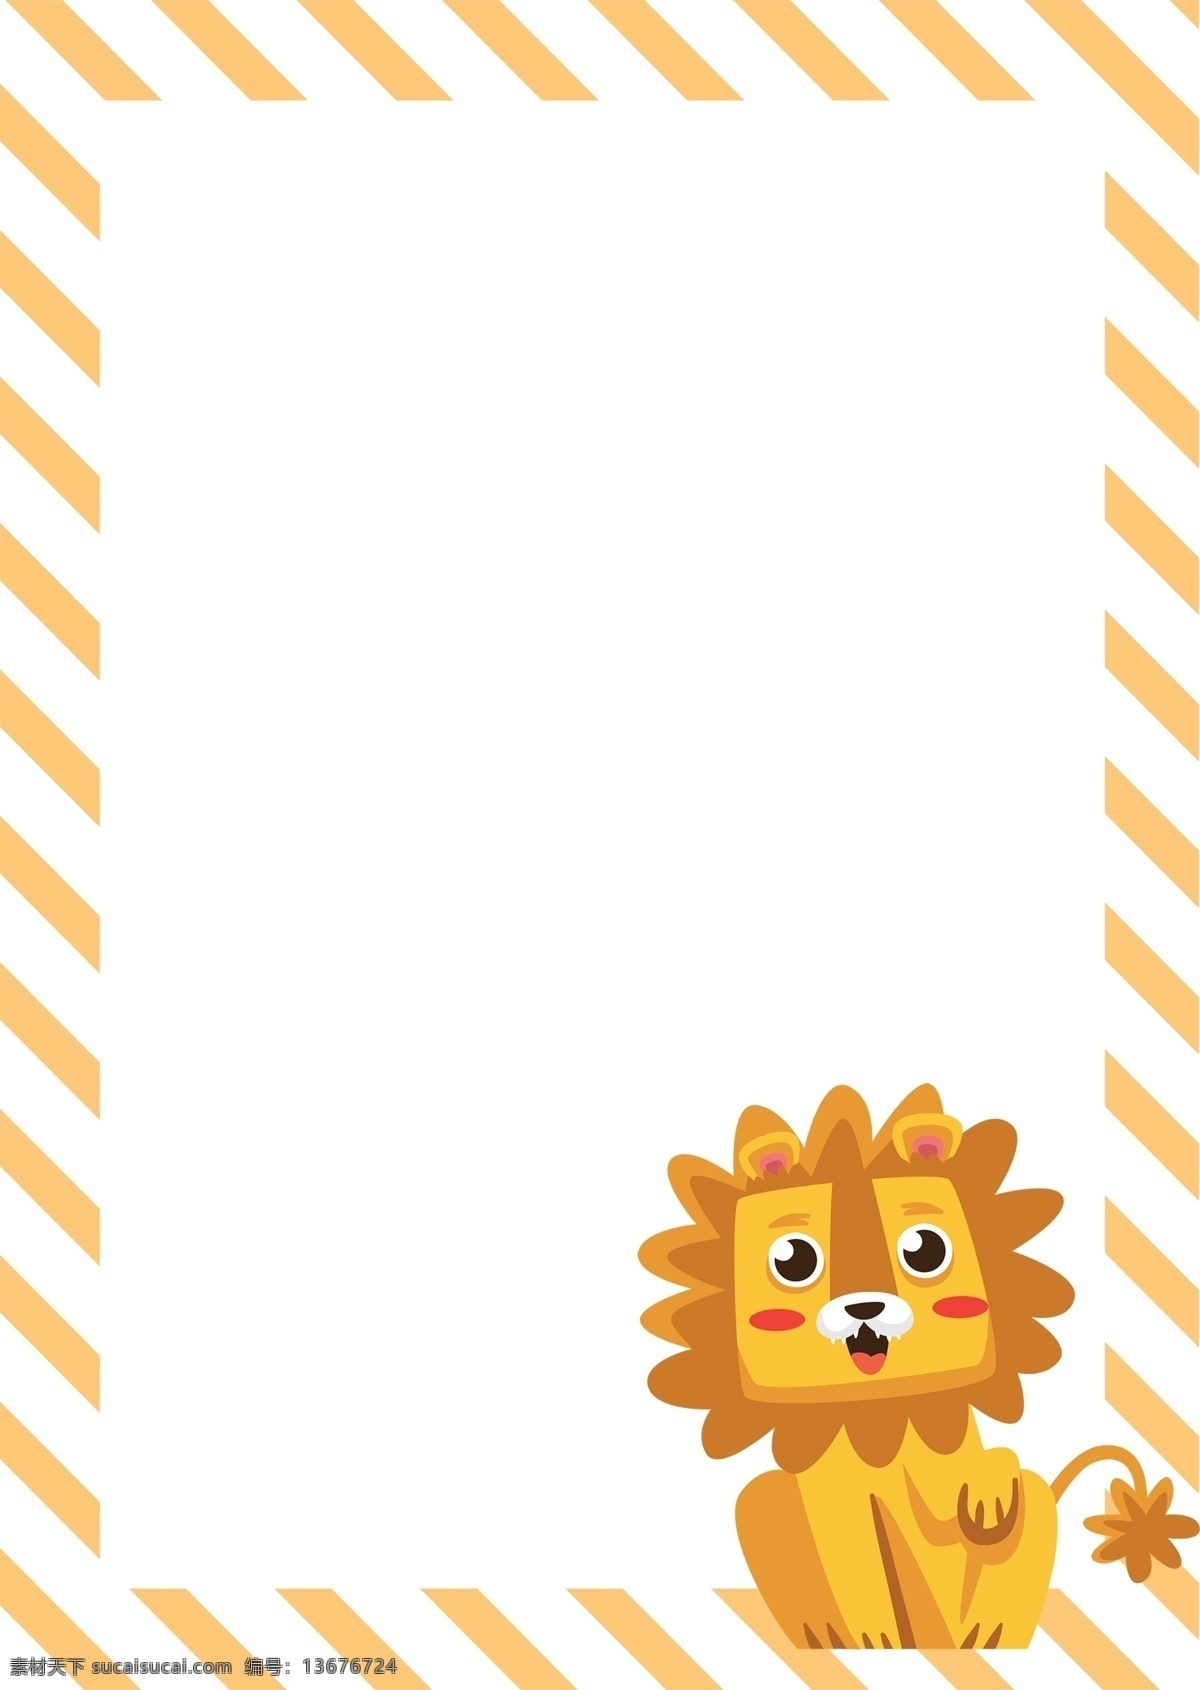 可爱 狮子 边框 插画 狮子边框 黄色的边框 立体边框 创意边框 手绘边框 卡通边框 动物的边框